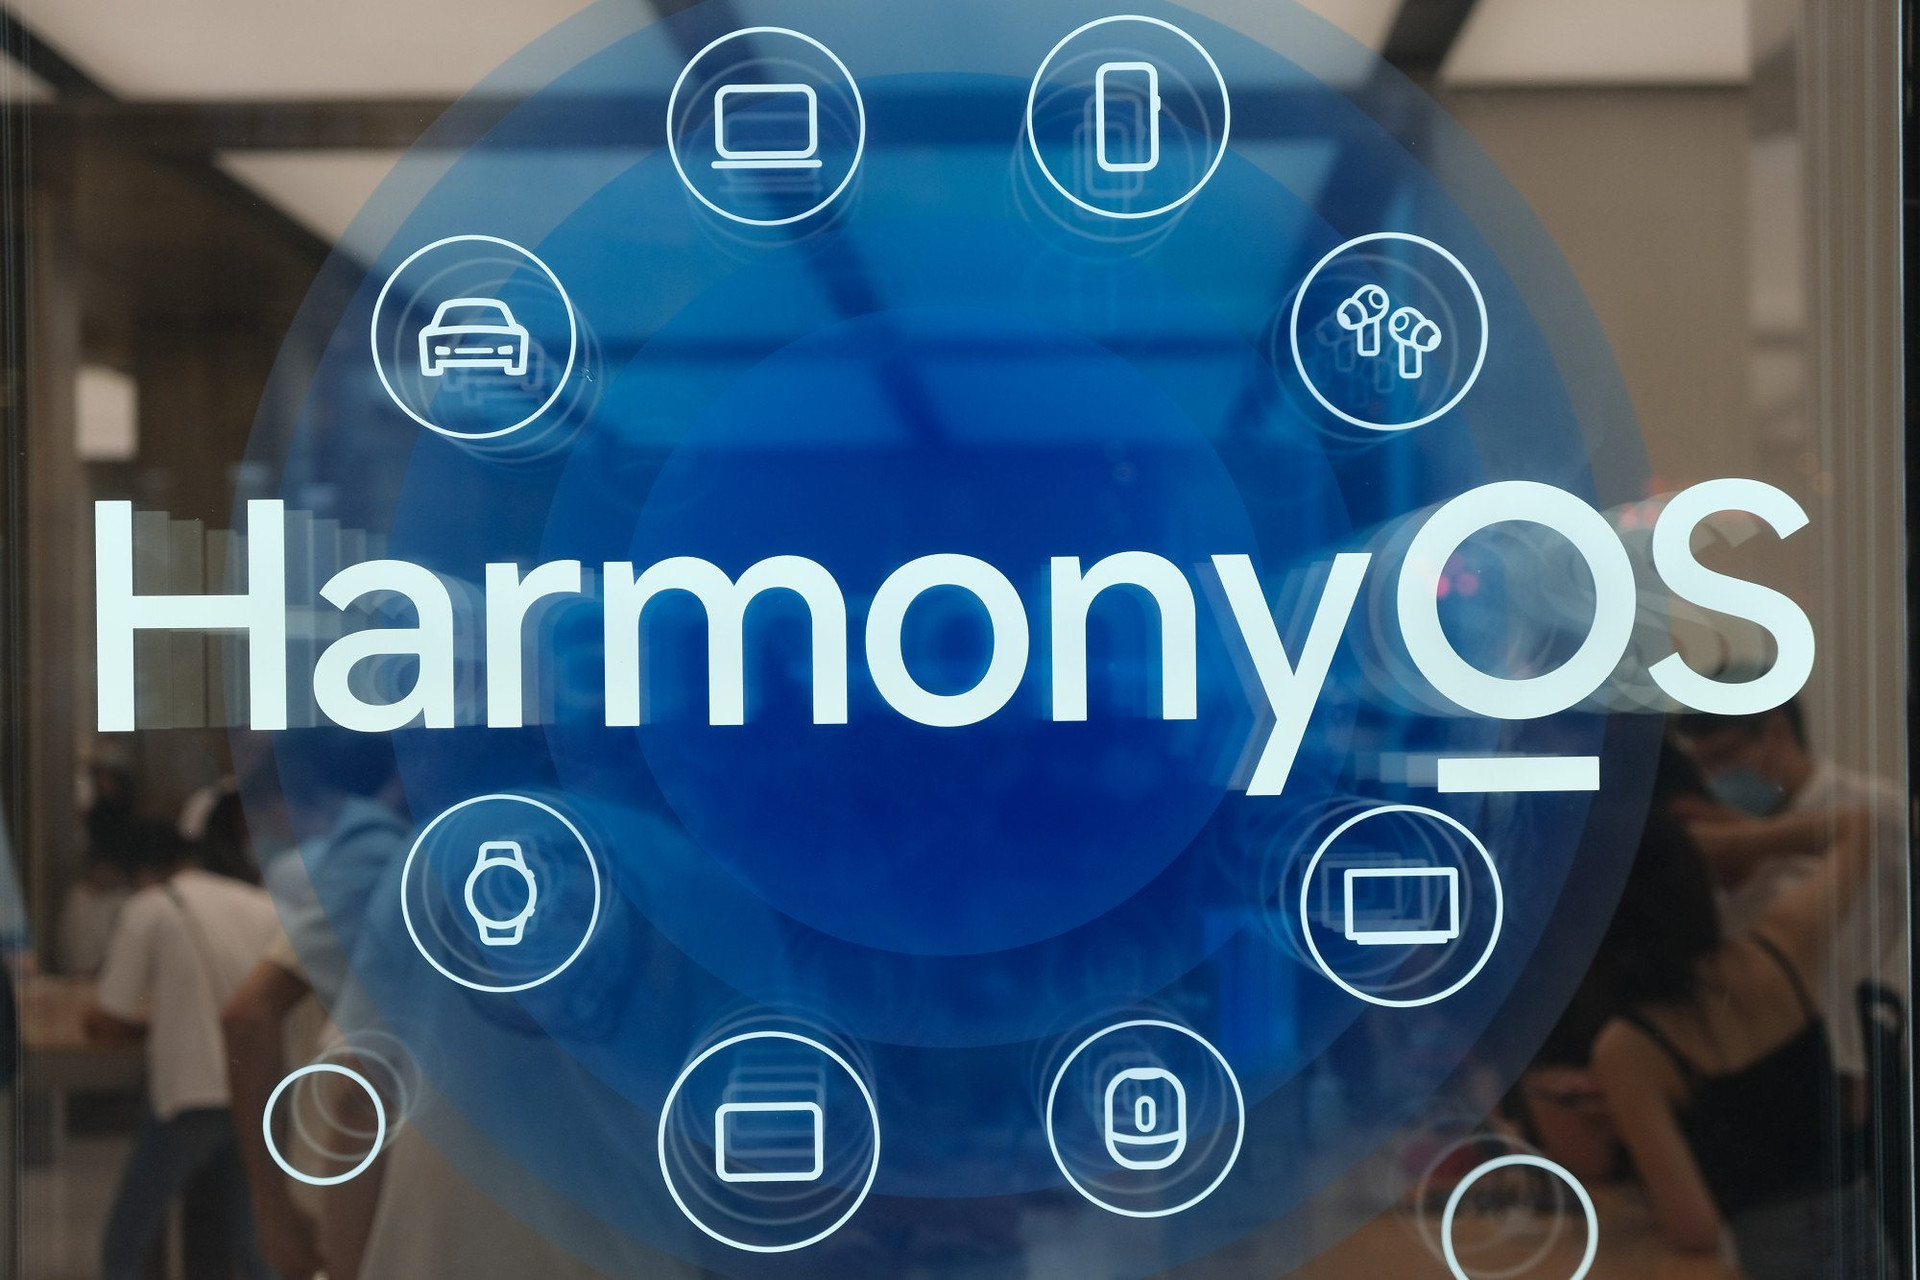 Canh bạc thay thế Android của Huawei thành công ngoài mong đợi, các ông lớn công nghệ Trung Quốc ồ ạt tuyển coder để viết ứng dụng cho HarmonyOS- Ảnh 2.